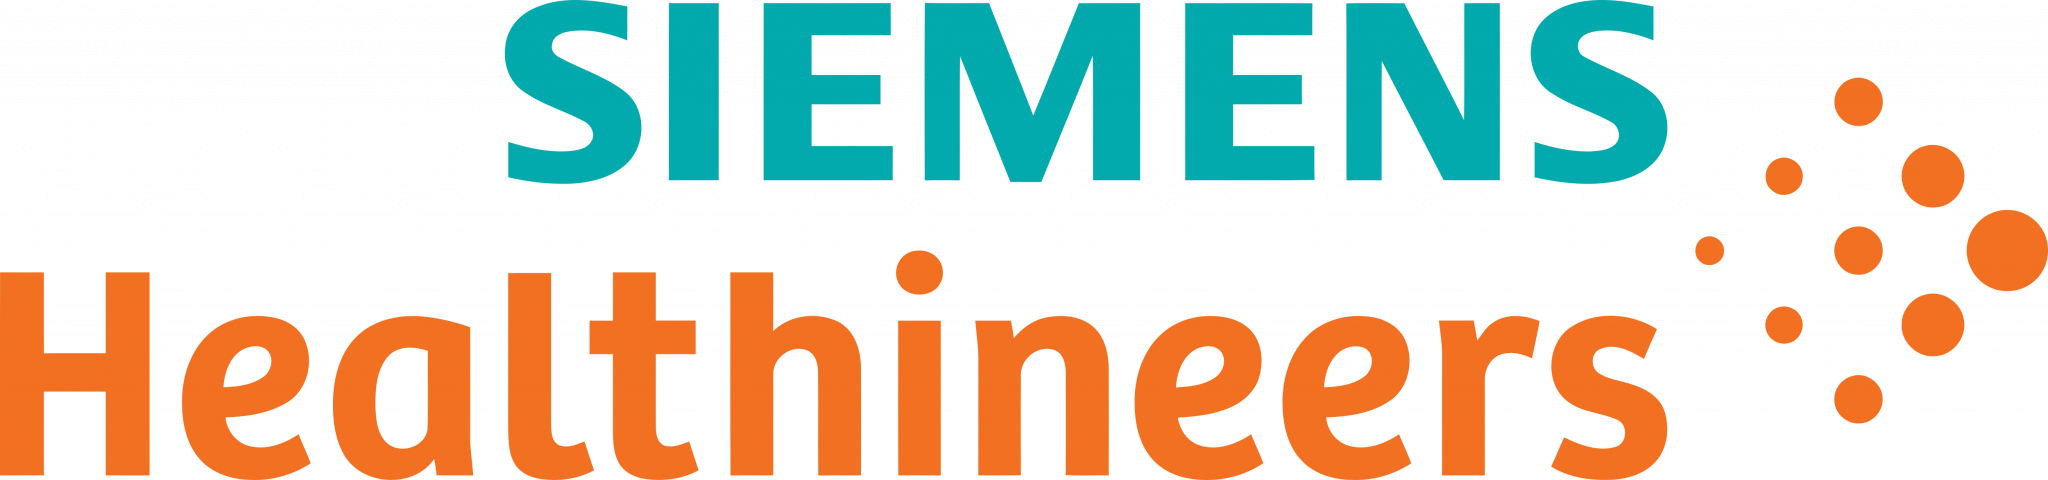 Siemens_Healthineers_Logo.png